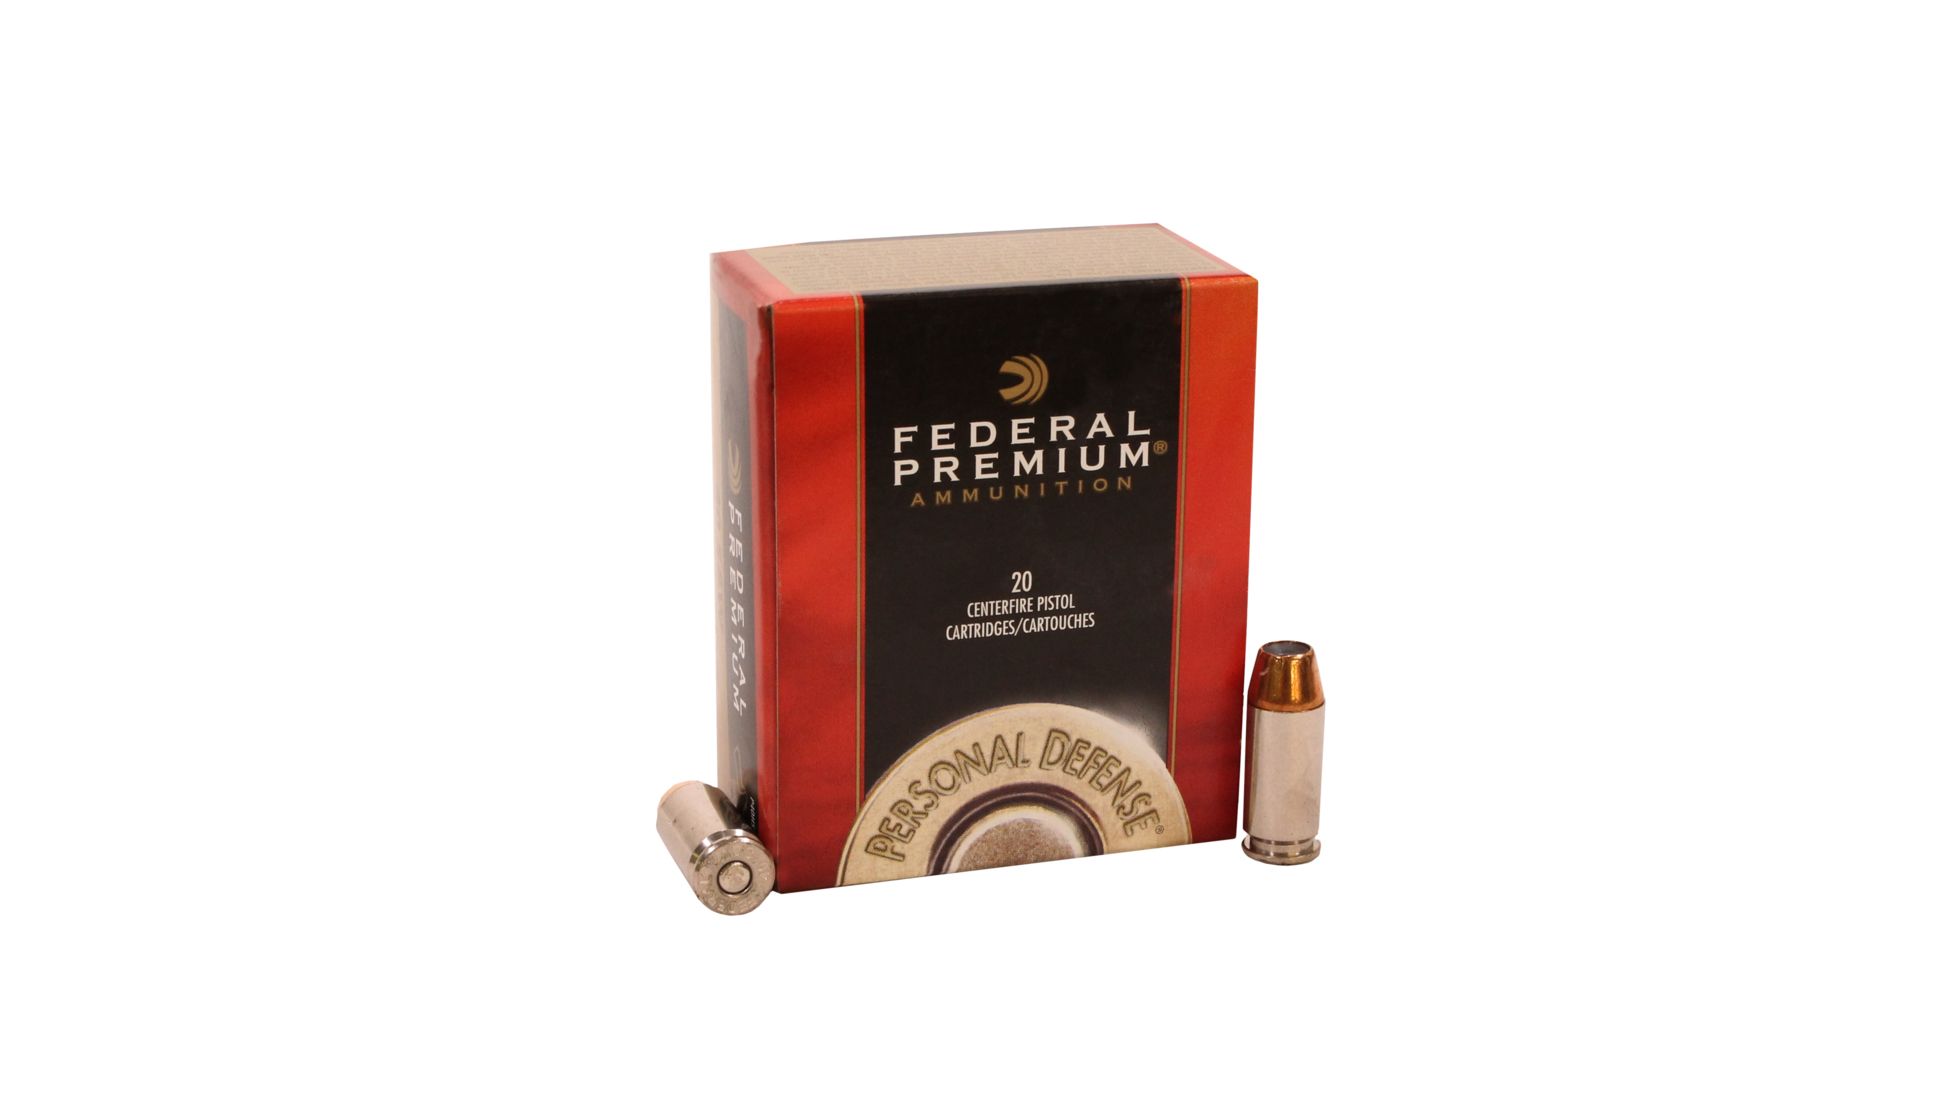 Federal Premium Centerfire Handgun Ammunition .40 S&W 155 grain Jacketed Hollow Point Brass Cased Centerfire Pistol Ammunition